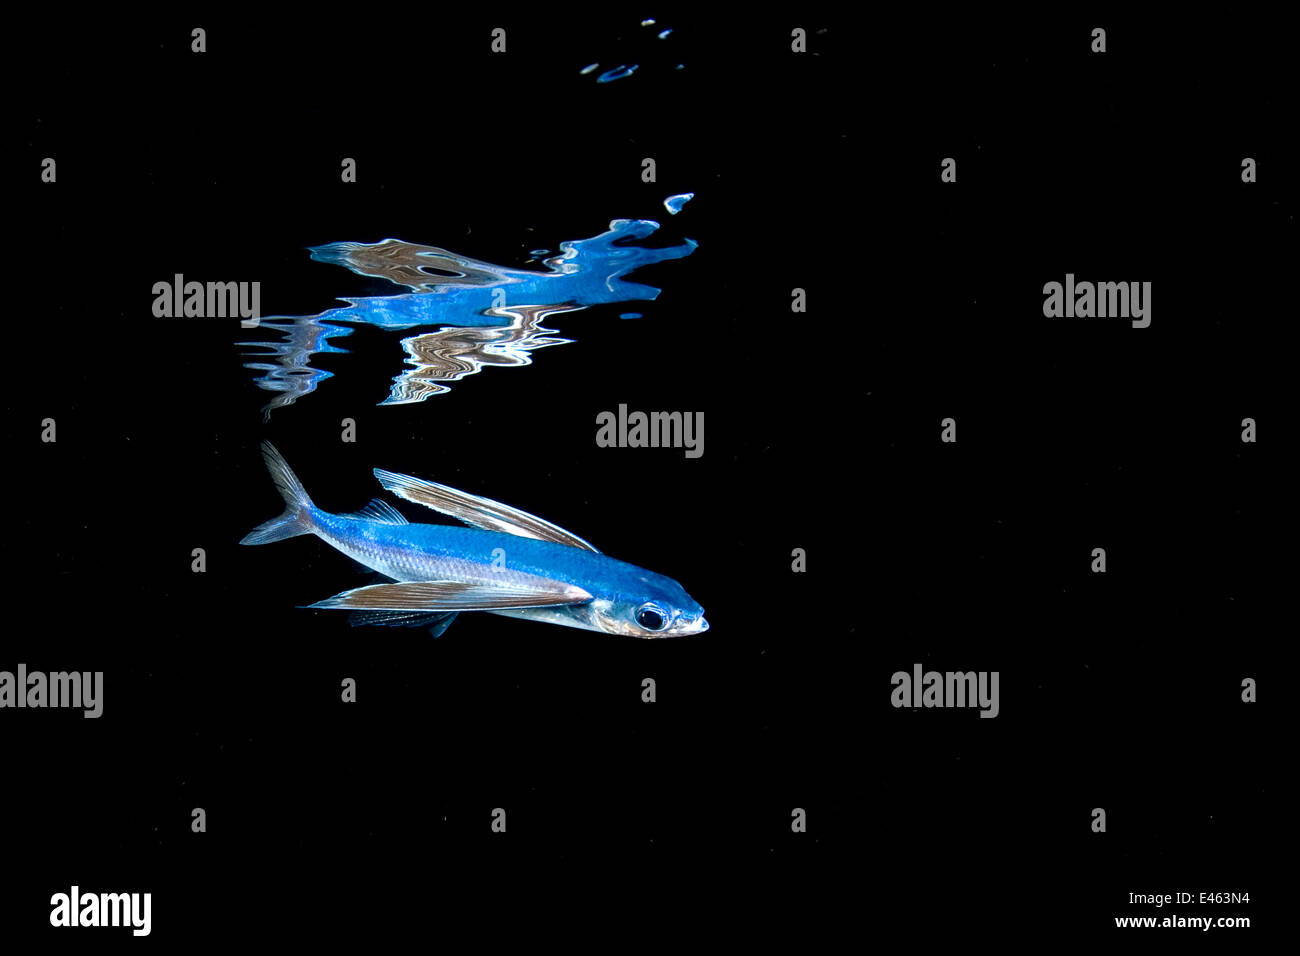 Mirrorwing les poissons volants (Hirundichthys)) en miroir et natation sous la surface dans la nuit, entre les Bahamas et le Gulf Stream, ouest de l'océan Atlantique, en Floride, aux États-Unis. Banque D'Images